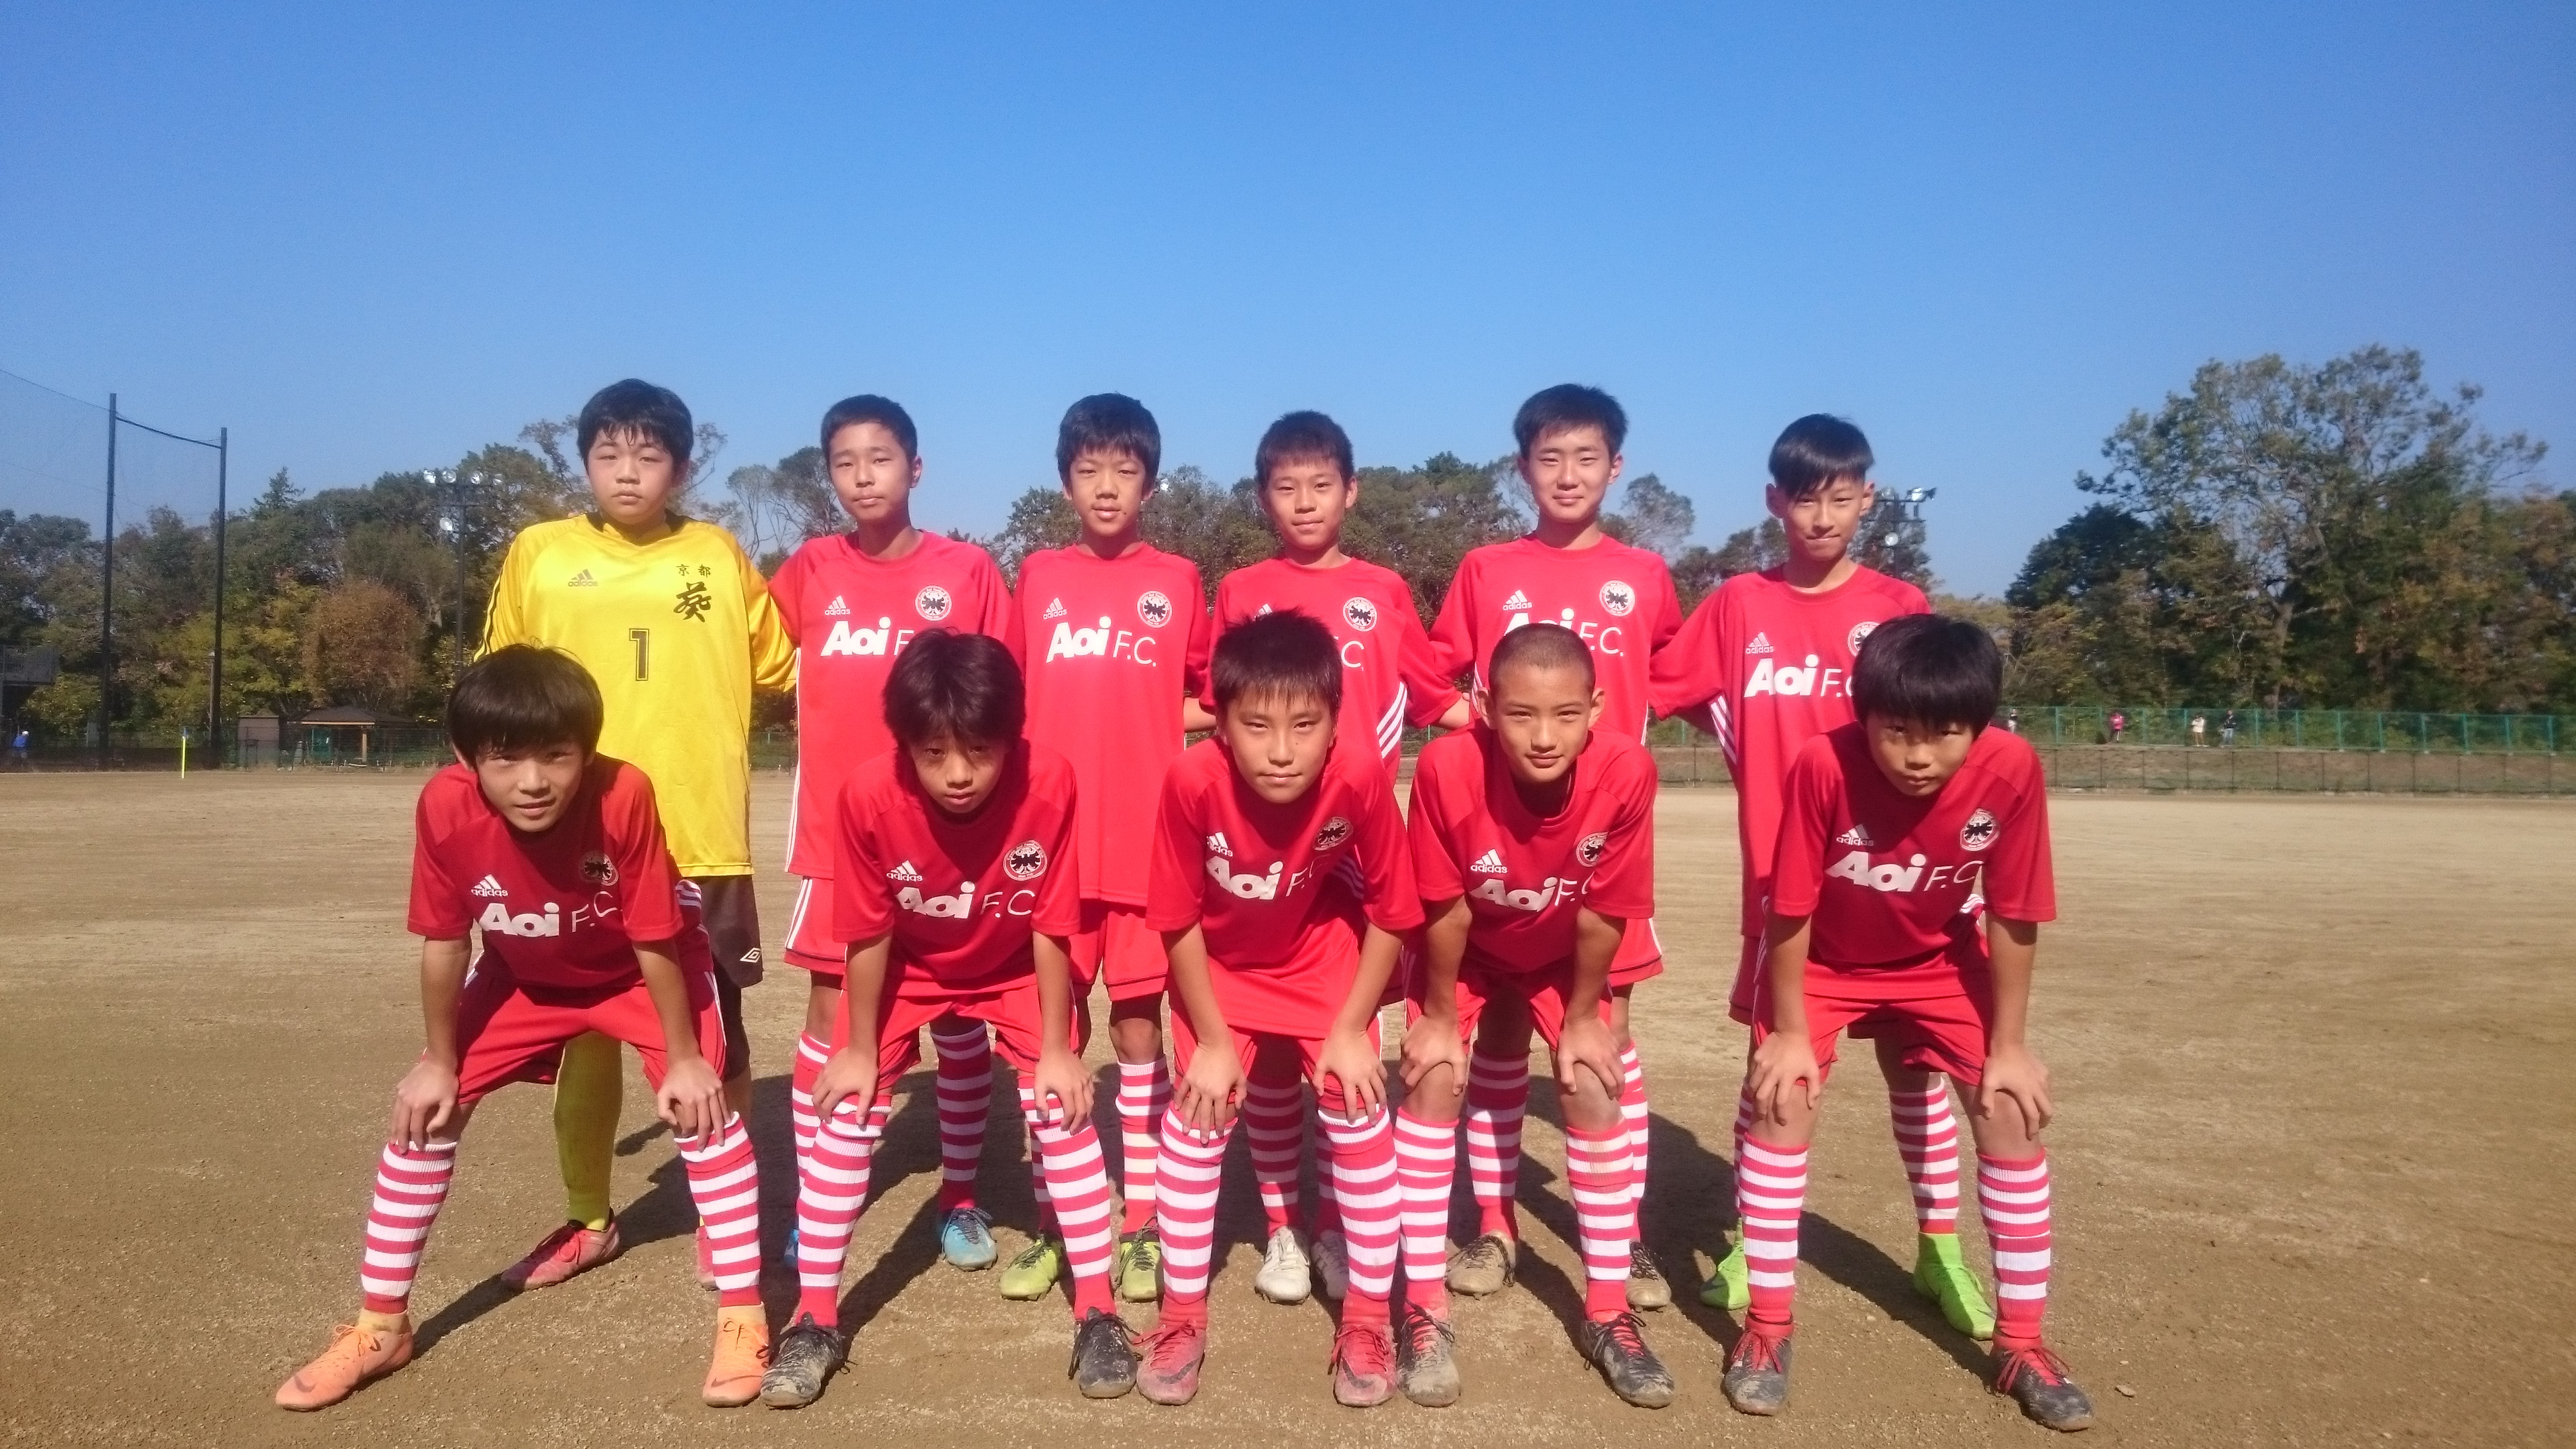 ジュニアユース U13リーグ 京都葵フットボールクラブ 幼児 小学生 中学生対象のサッカークラブ